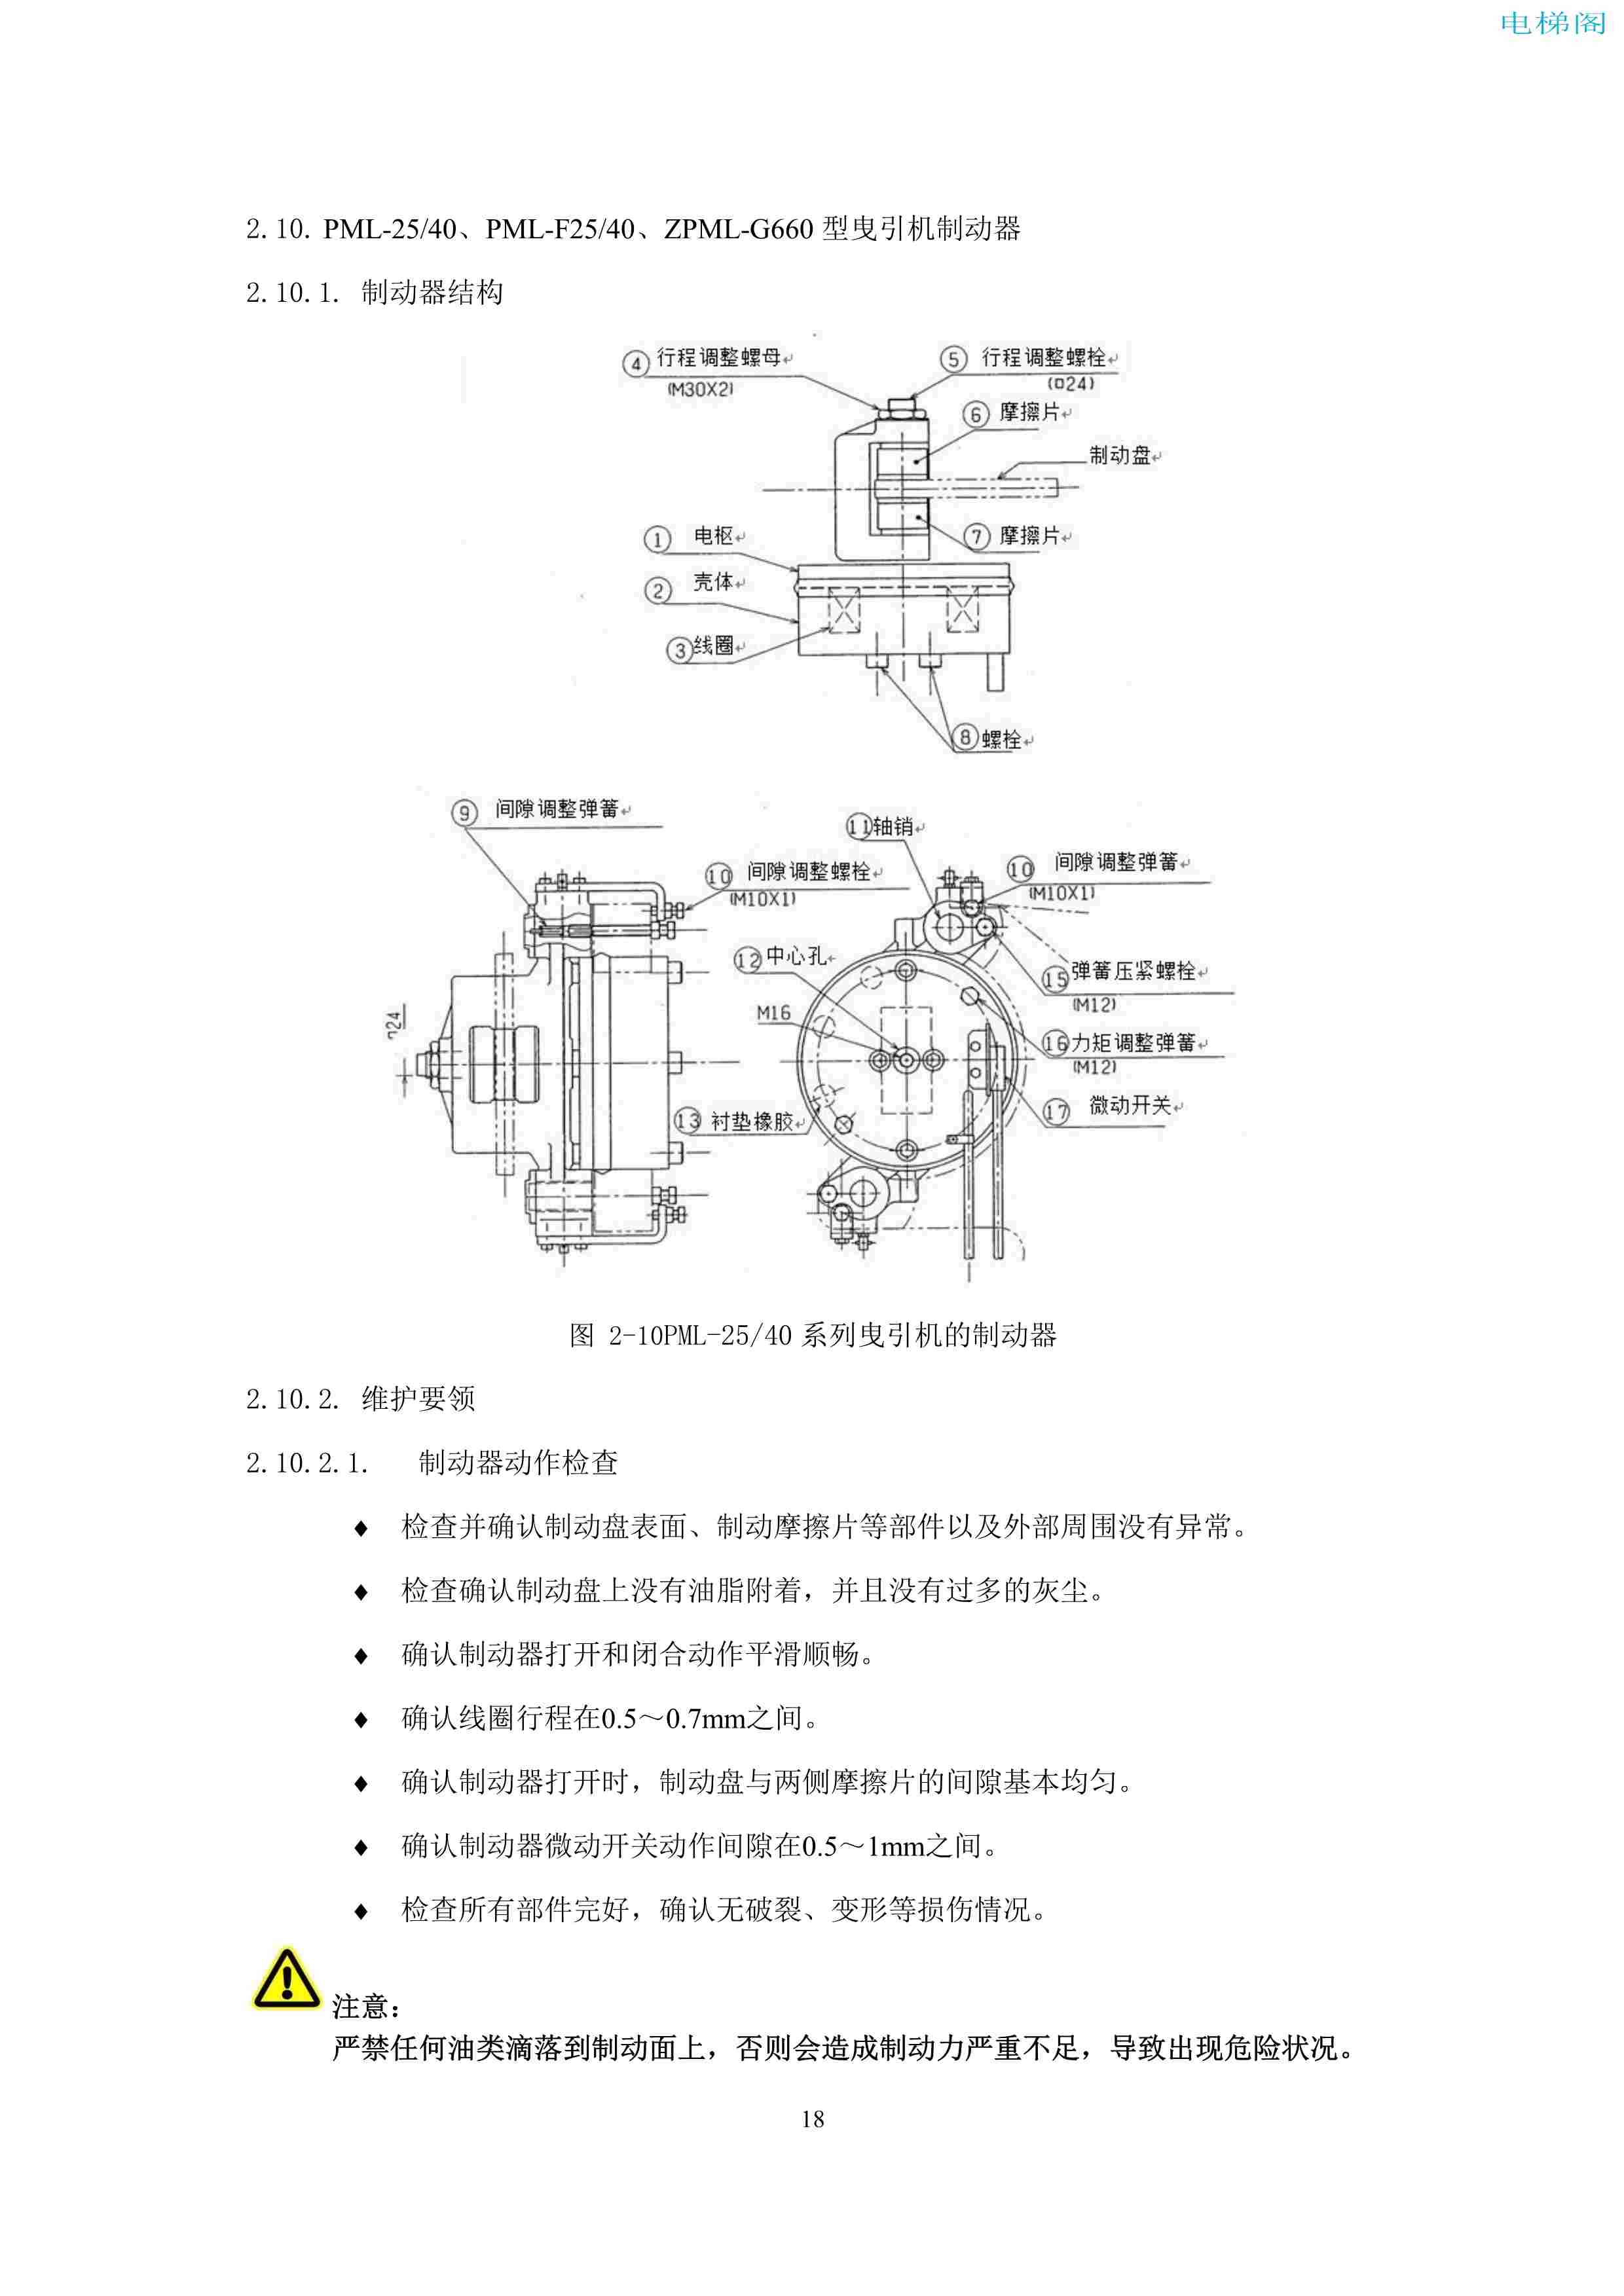 上海三菱电梯有限公司电梯制动器维护作业要领汇编_20.jpg